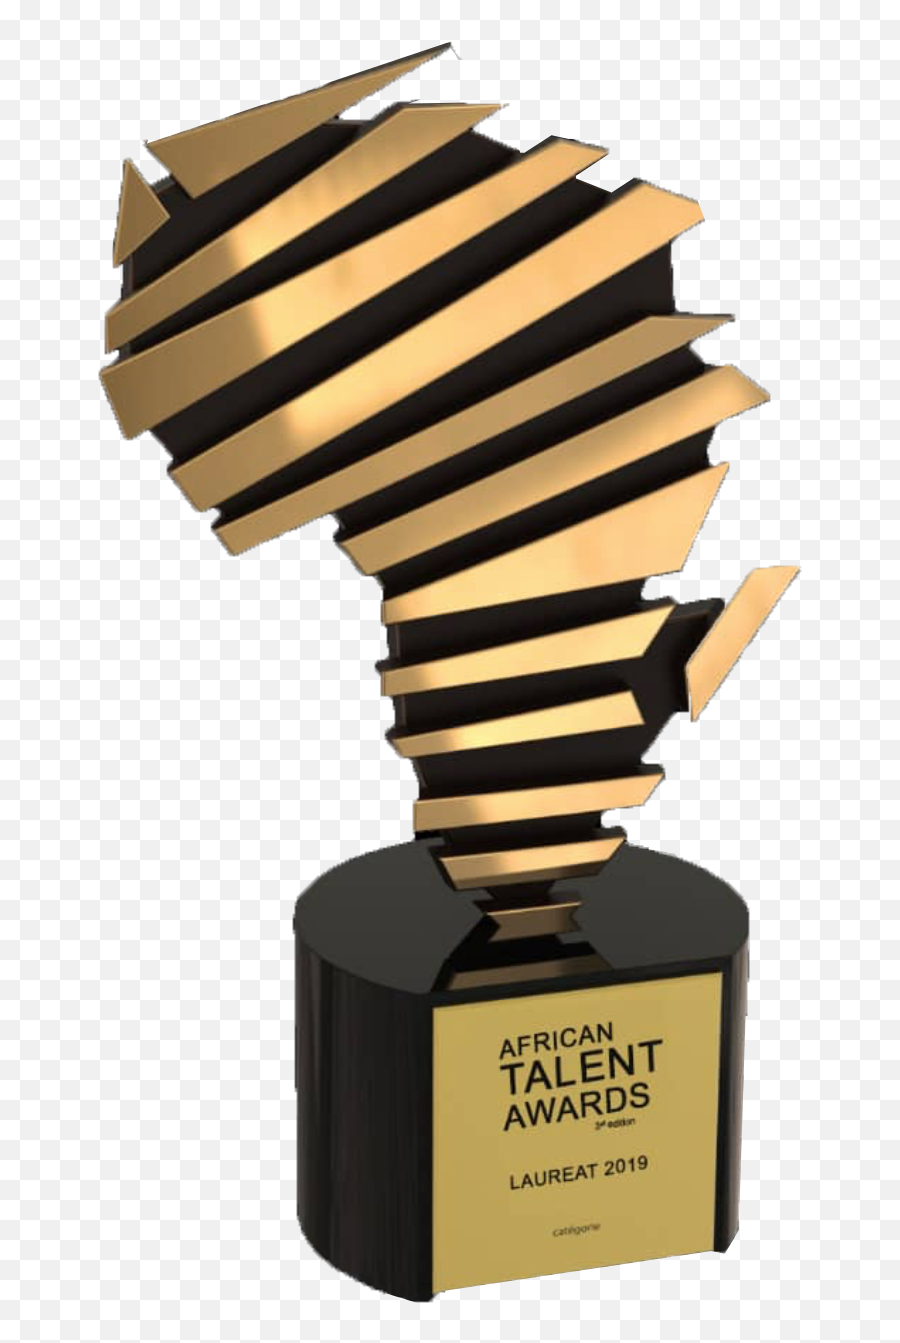 African Talent Awards - African Talent Awards 2019 Png,Award Png